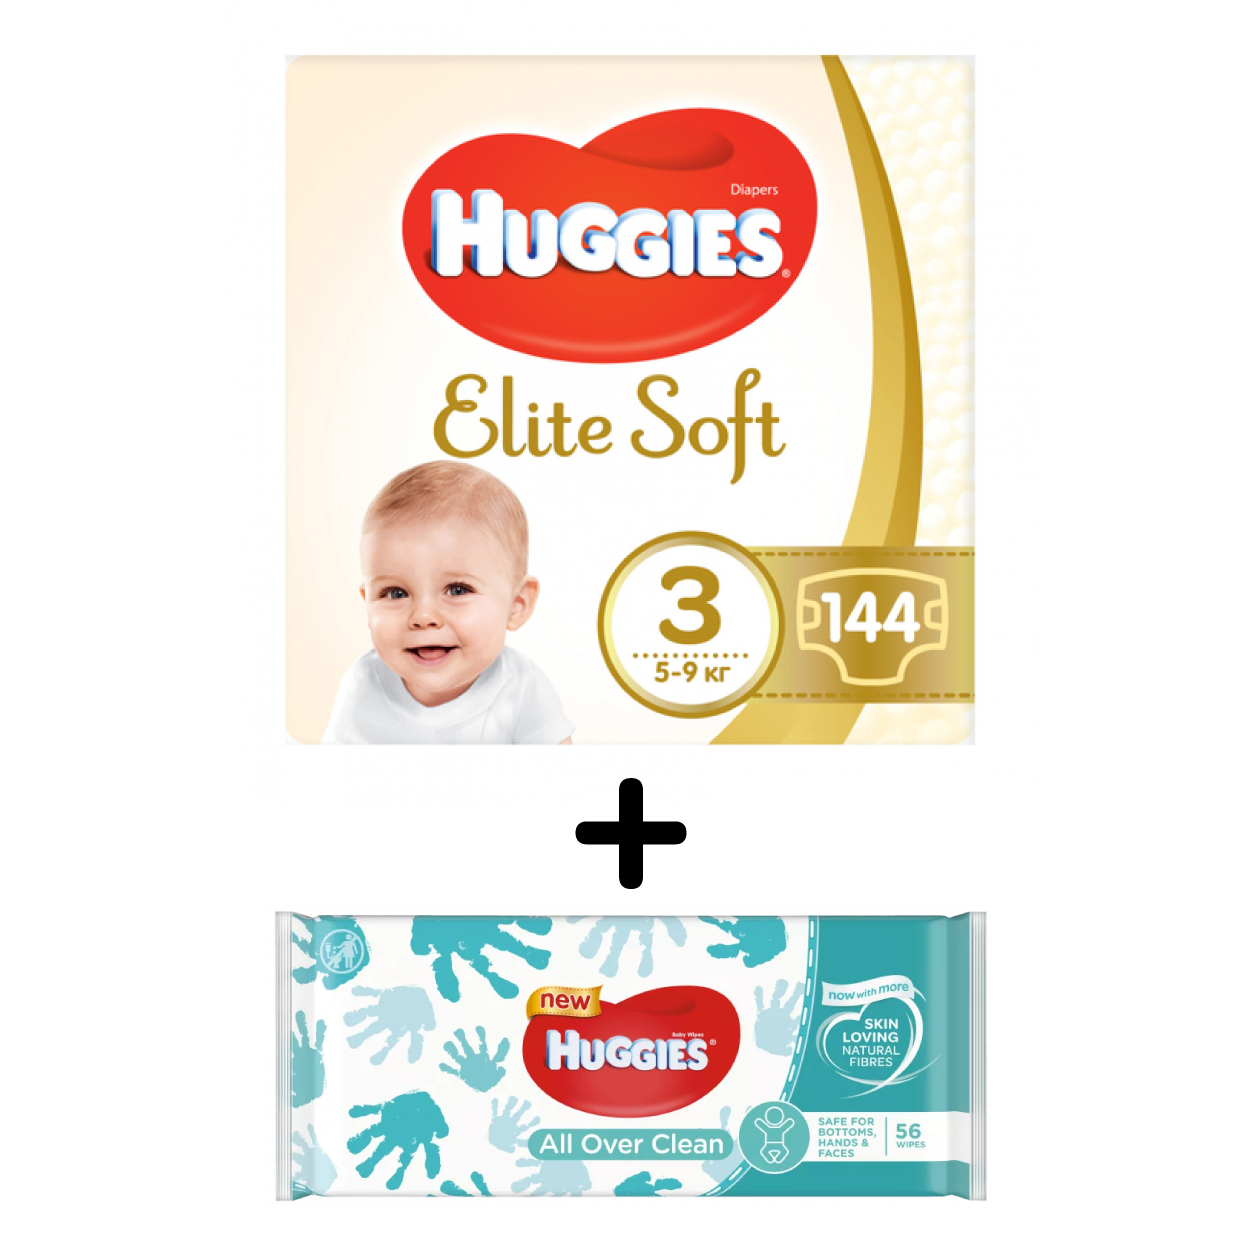 Набор Huggies: Подгузники Huggies Elite Soft 3 (5-9 кг), 144 шт. + Влажные салфетки Huggies All Over Clean, 56 шт. - фото 1